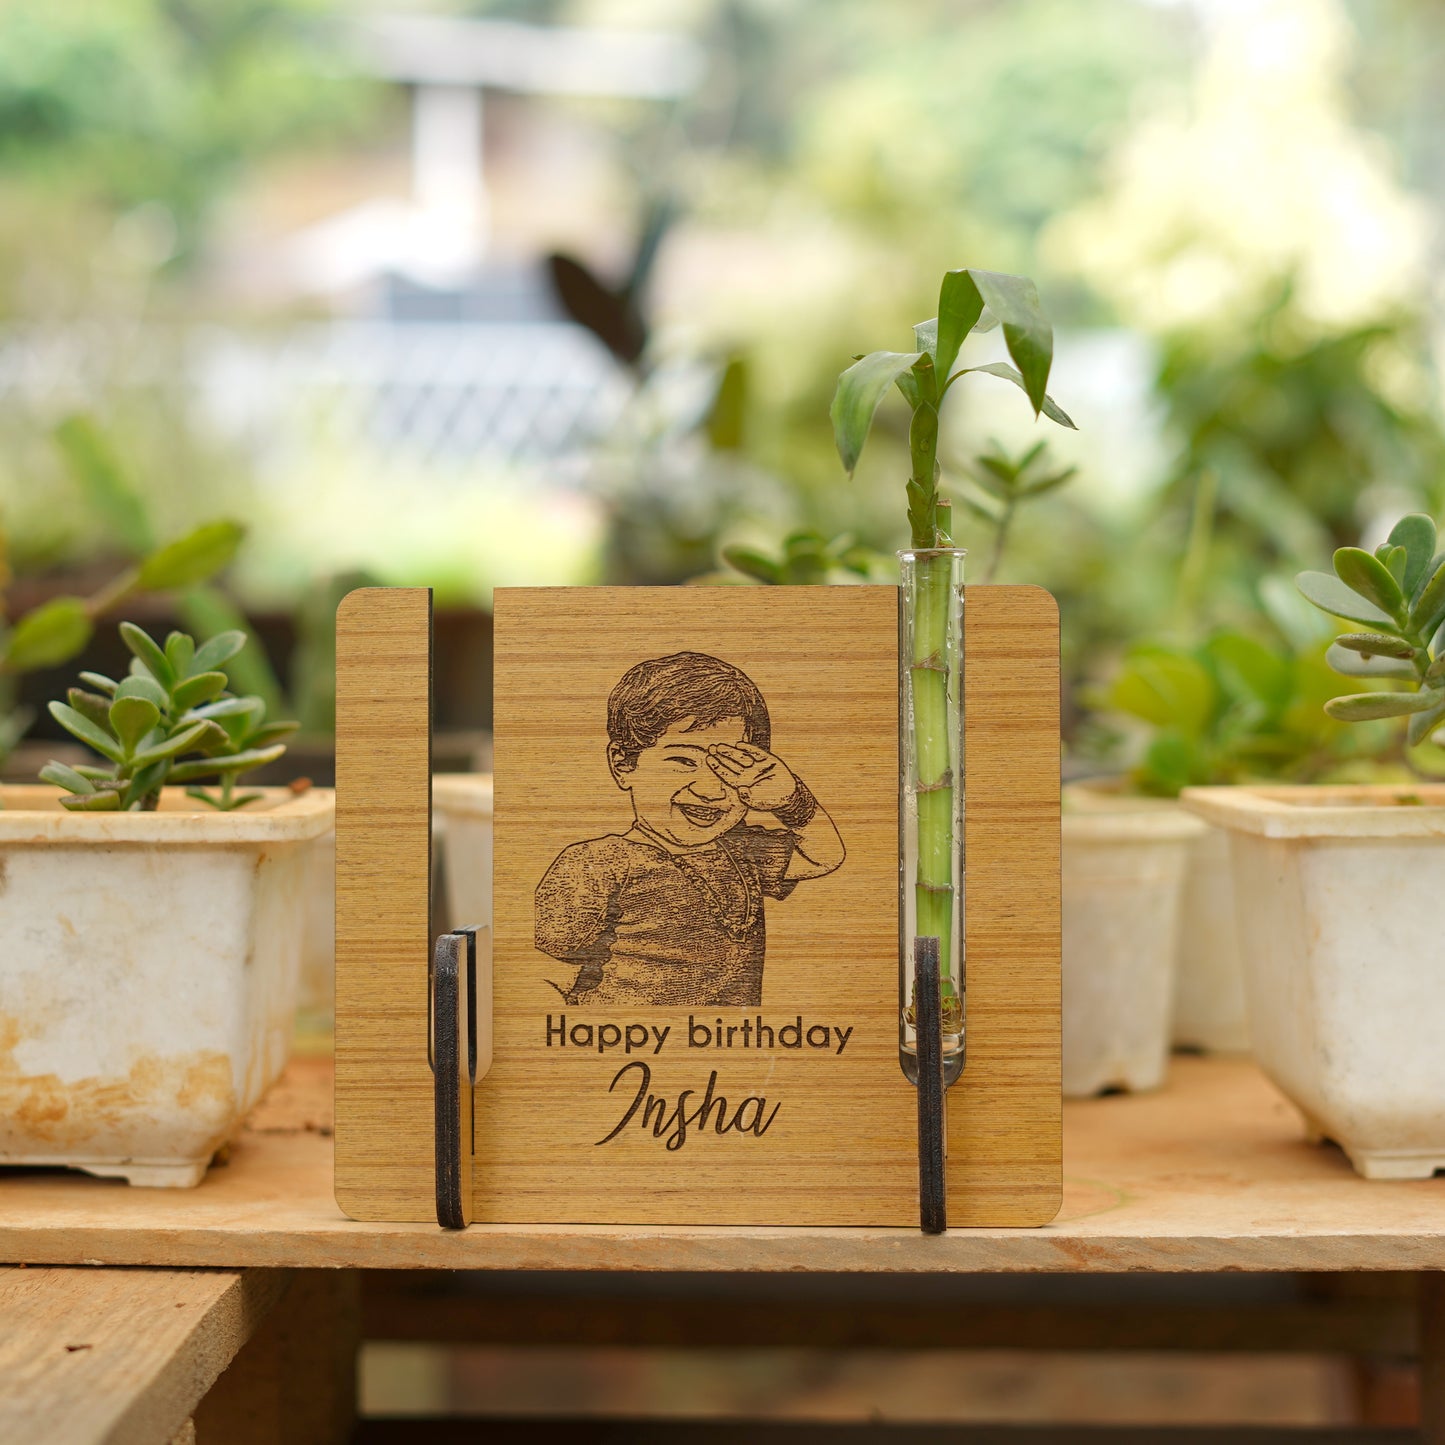 Customized Photo Engraved Wooden Plant Vase